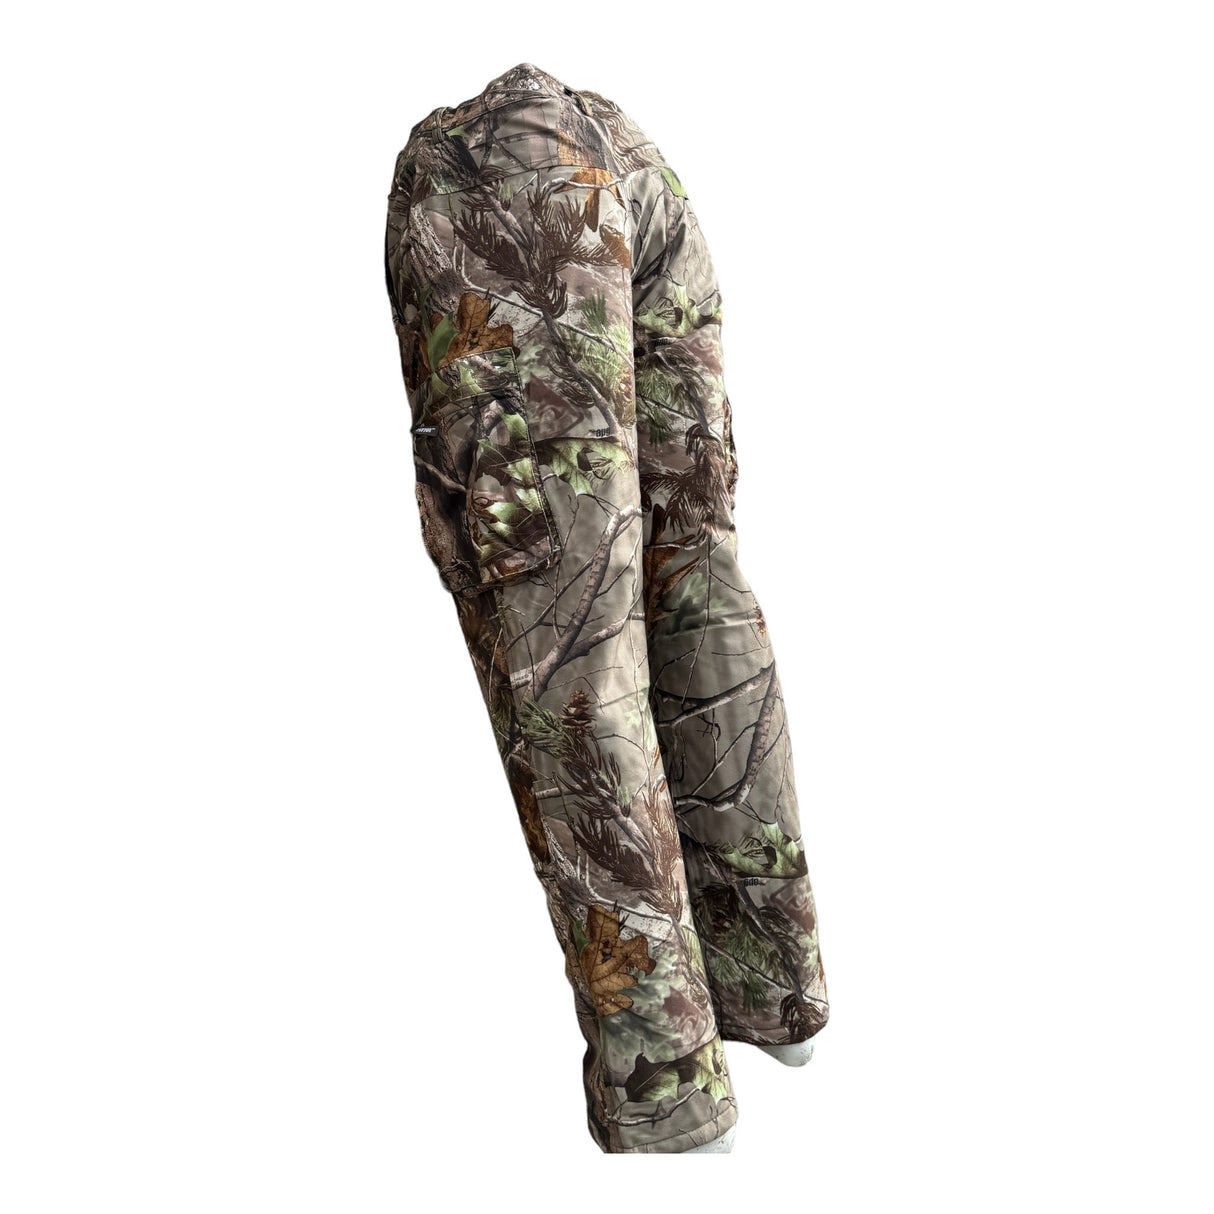 Pantalone Patton termico impermeabile mimetica bosco